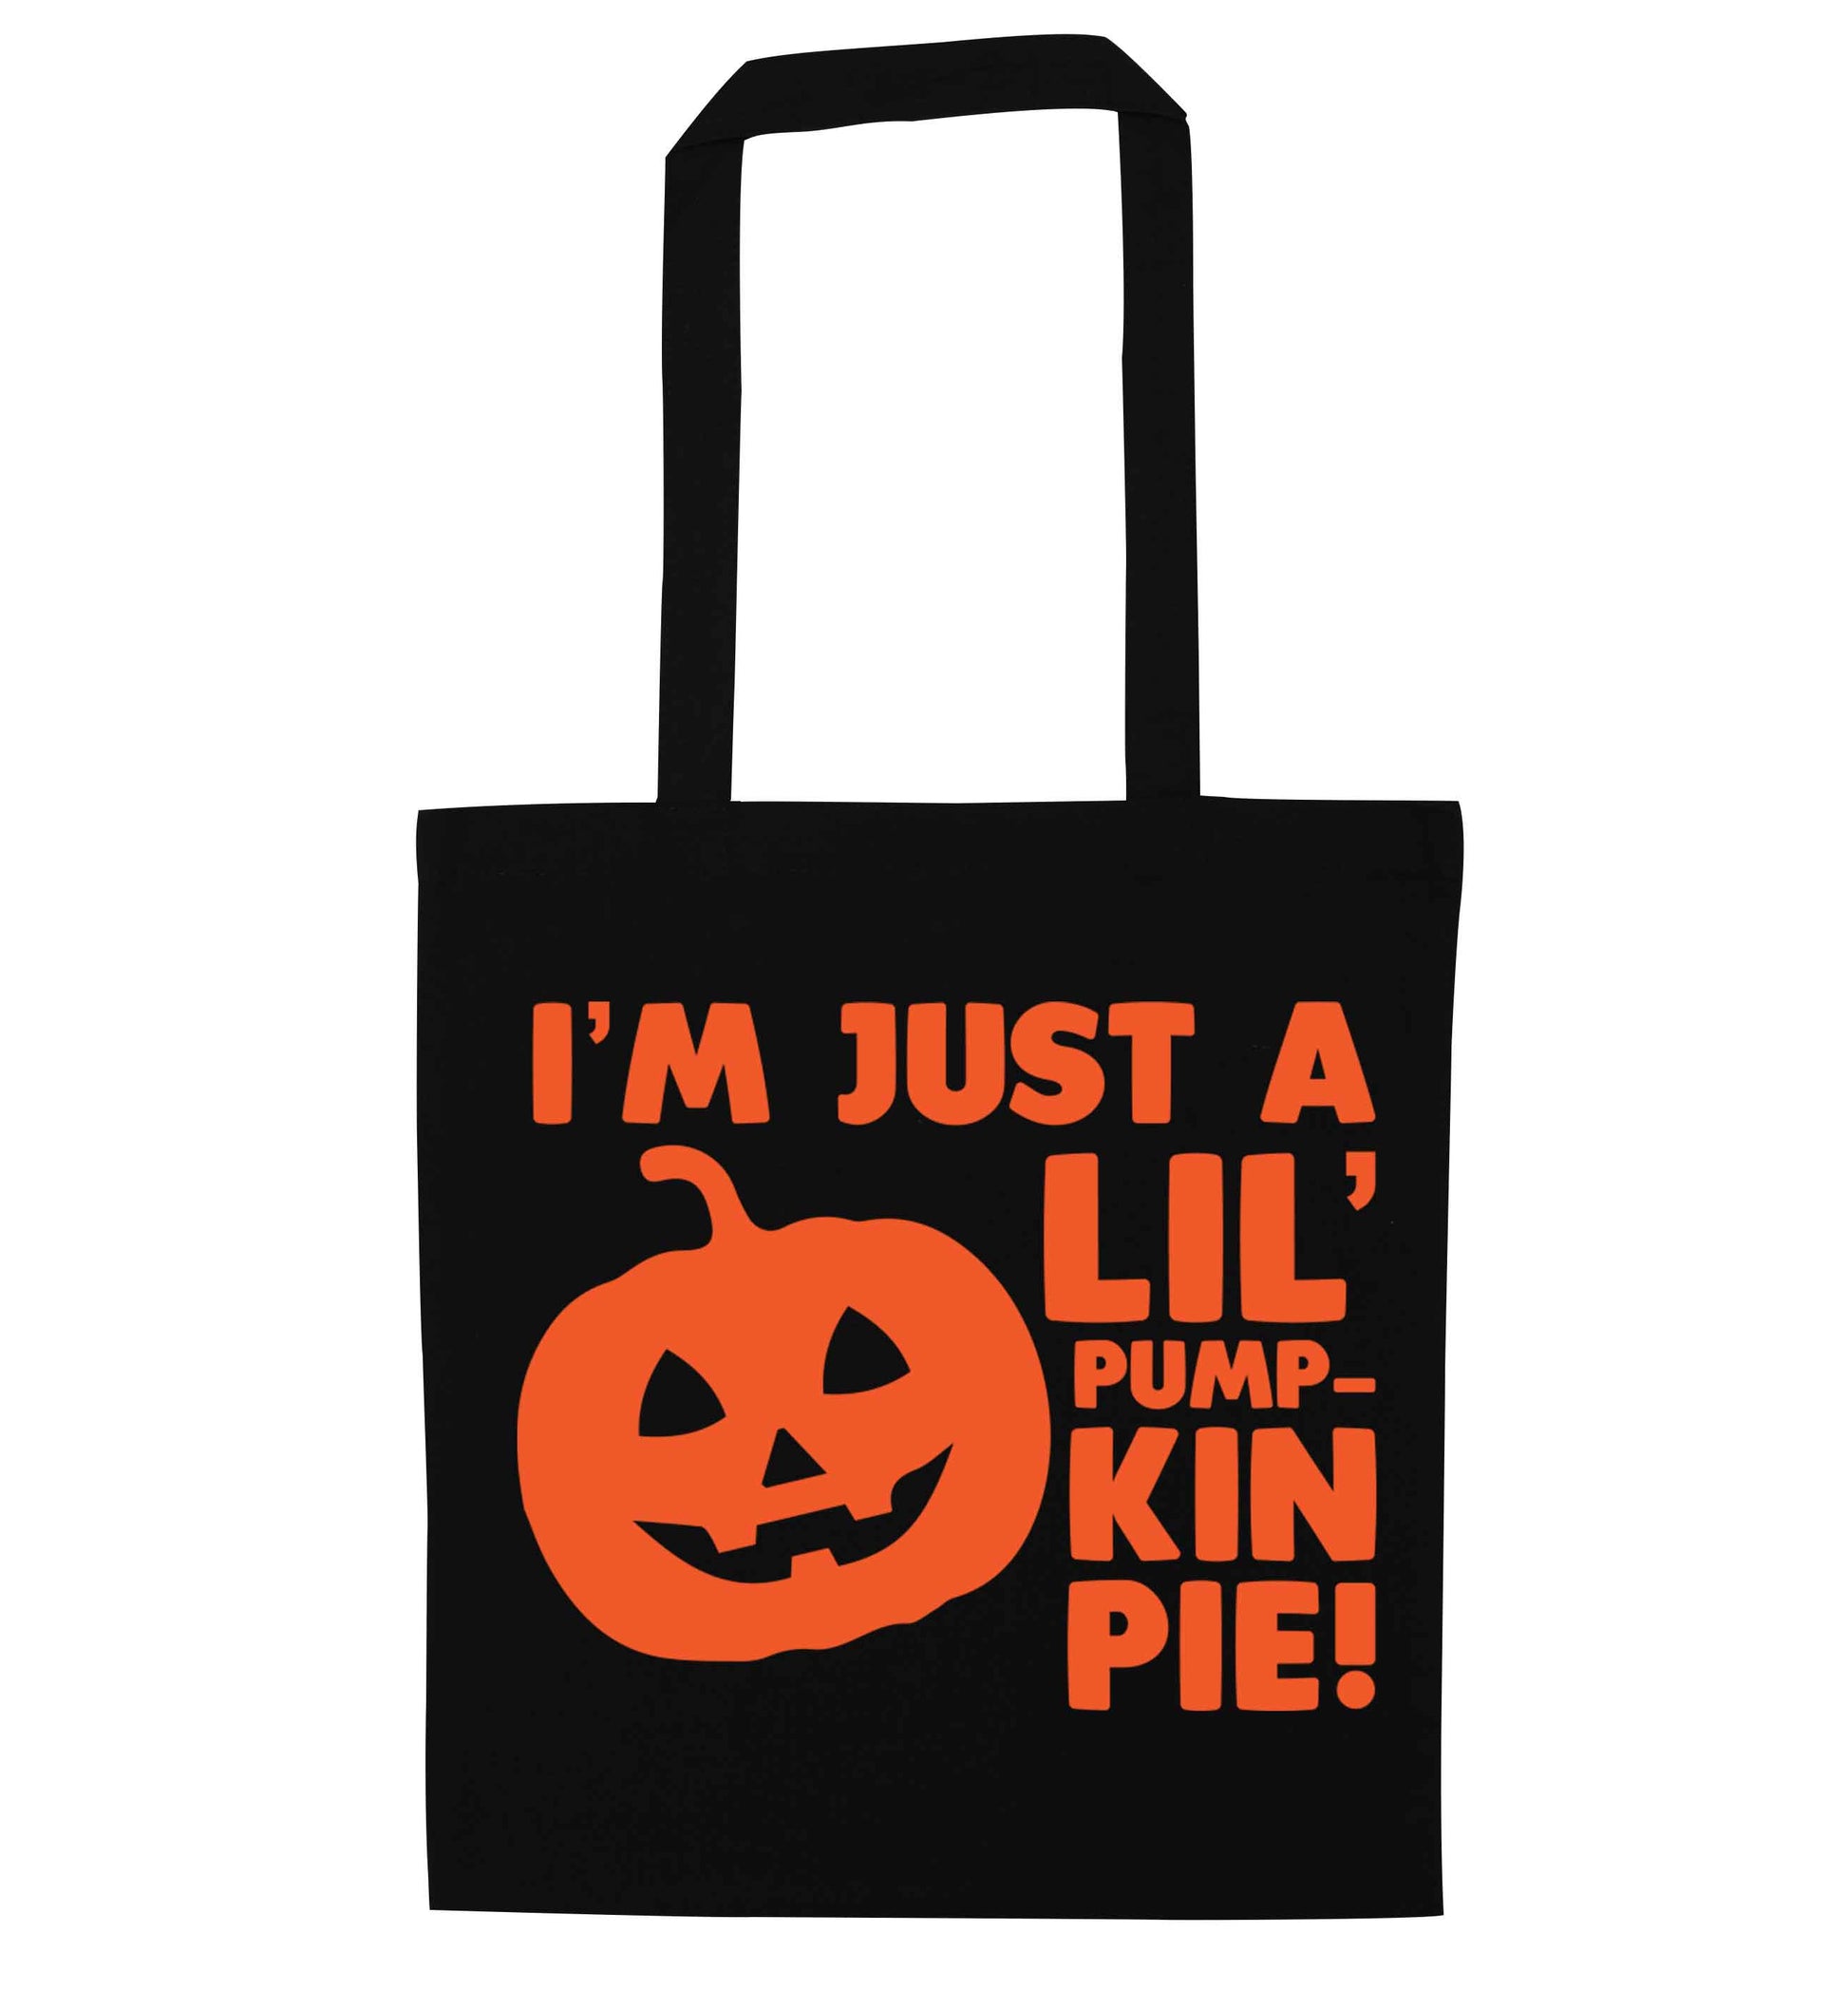 I'm just a lil' pumpkin pie black tote bag